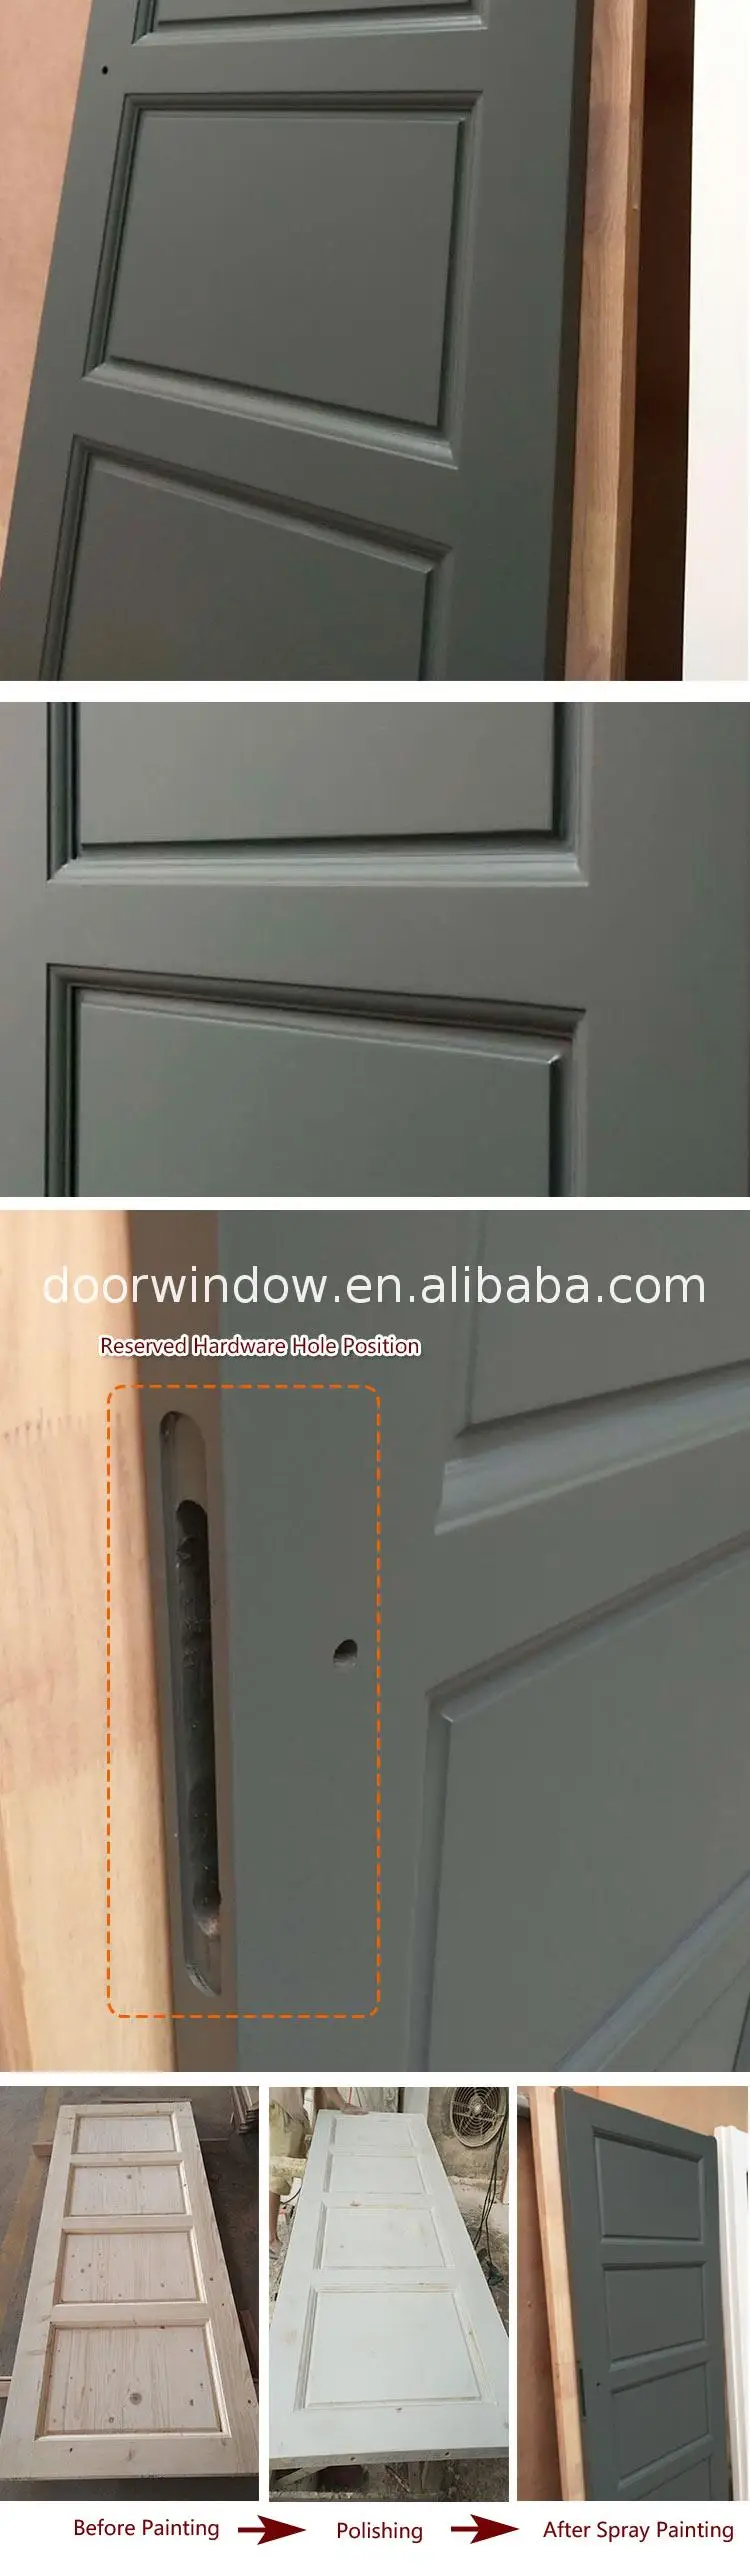 Wood panel door design interior doors polish